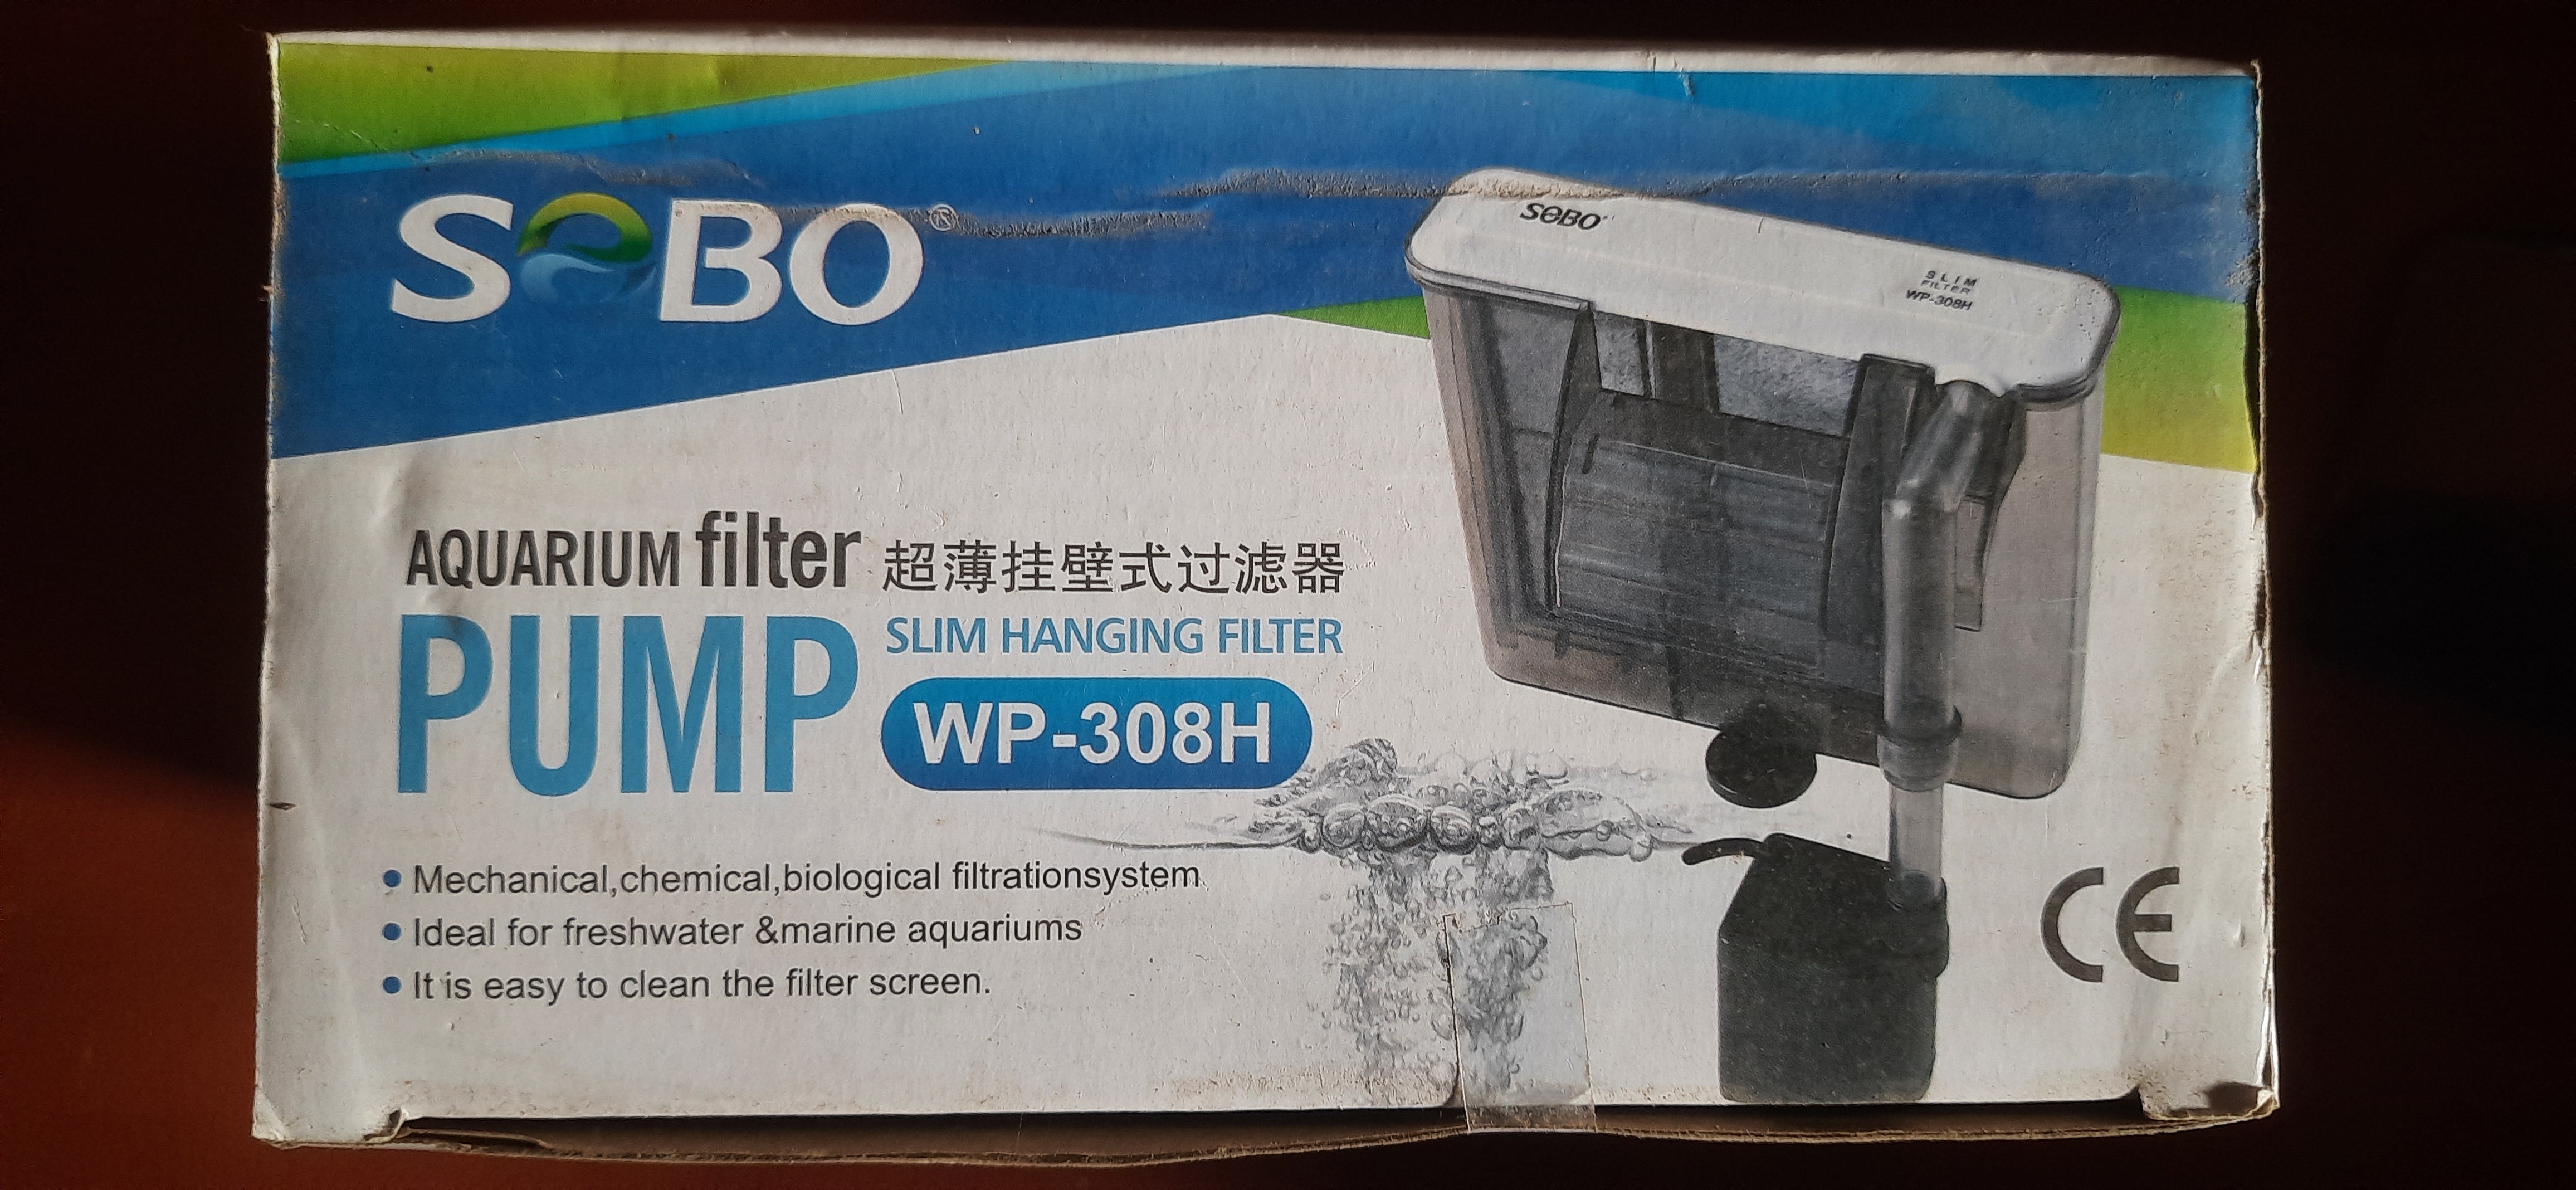 Sobo WP-308H Slim Hanging Filter